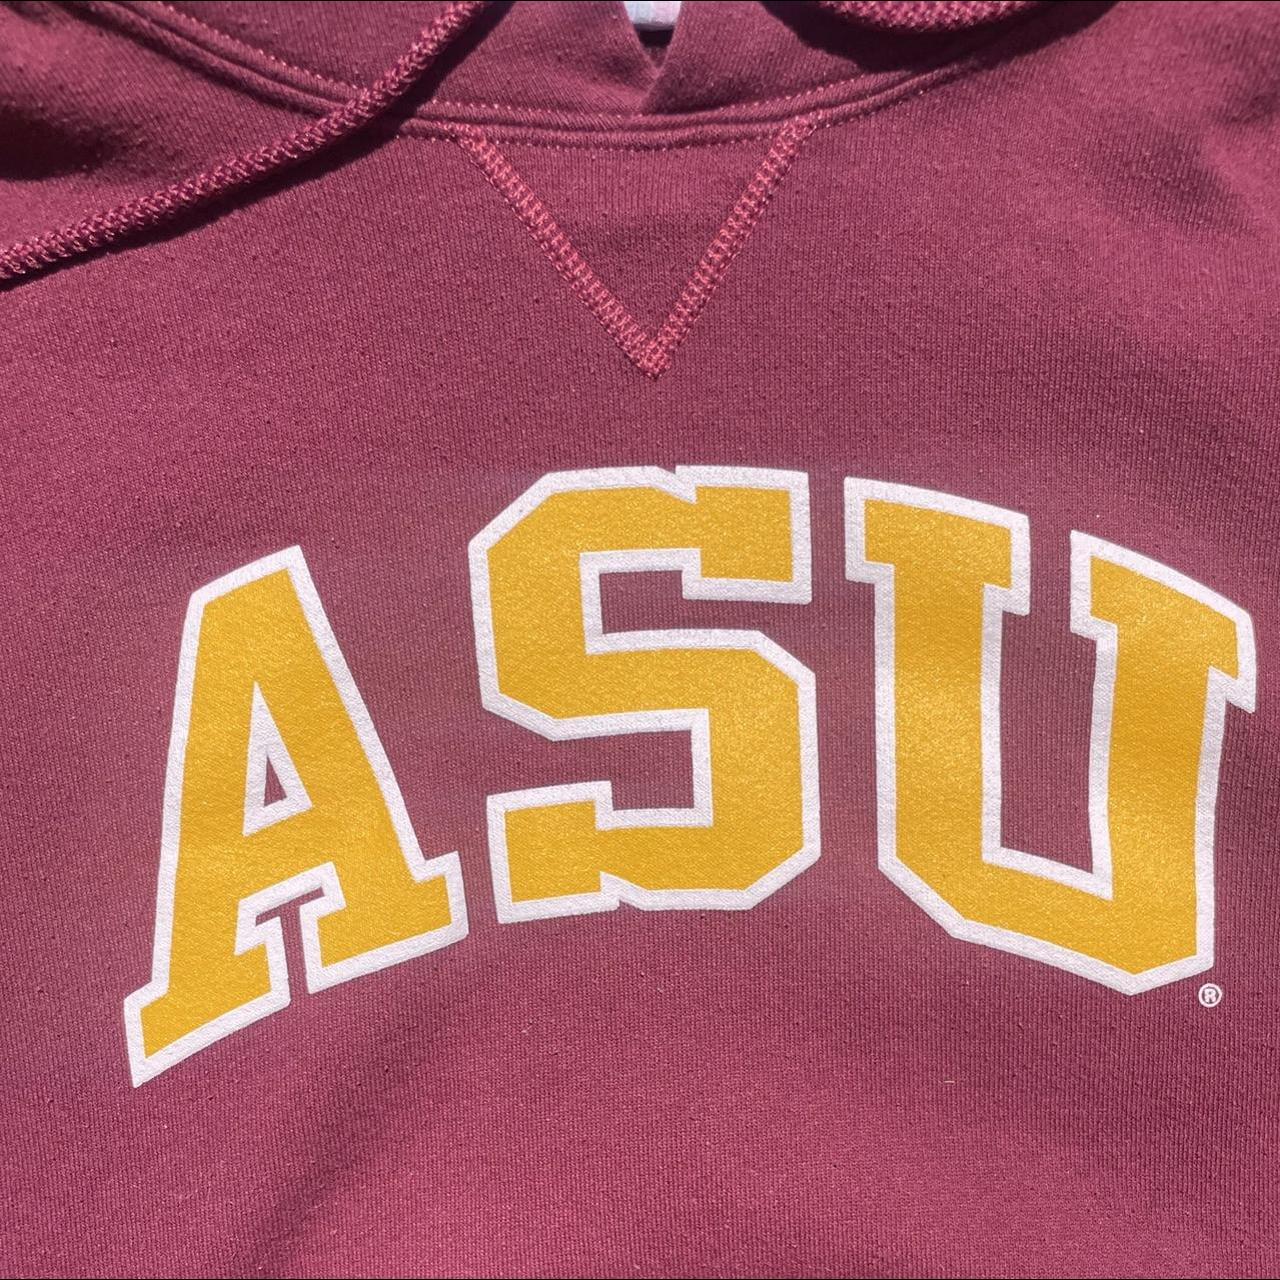 Vintage Russell ASU hoodie! Size Medium! Extremely... - Depop